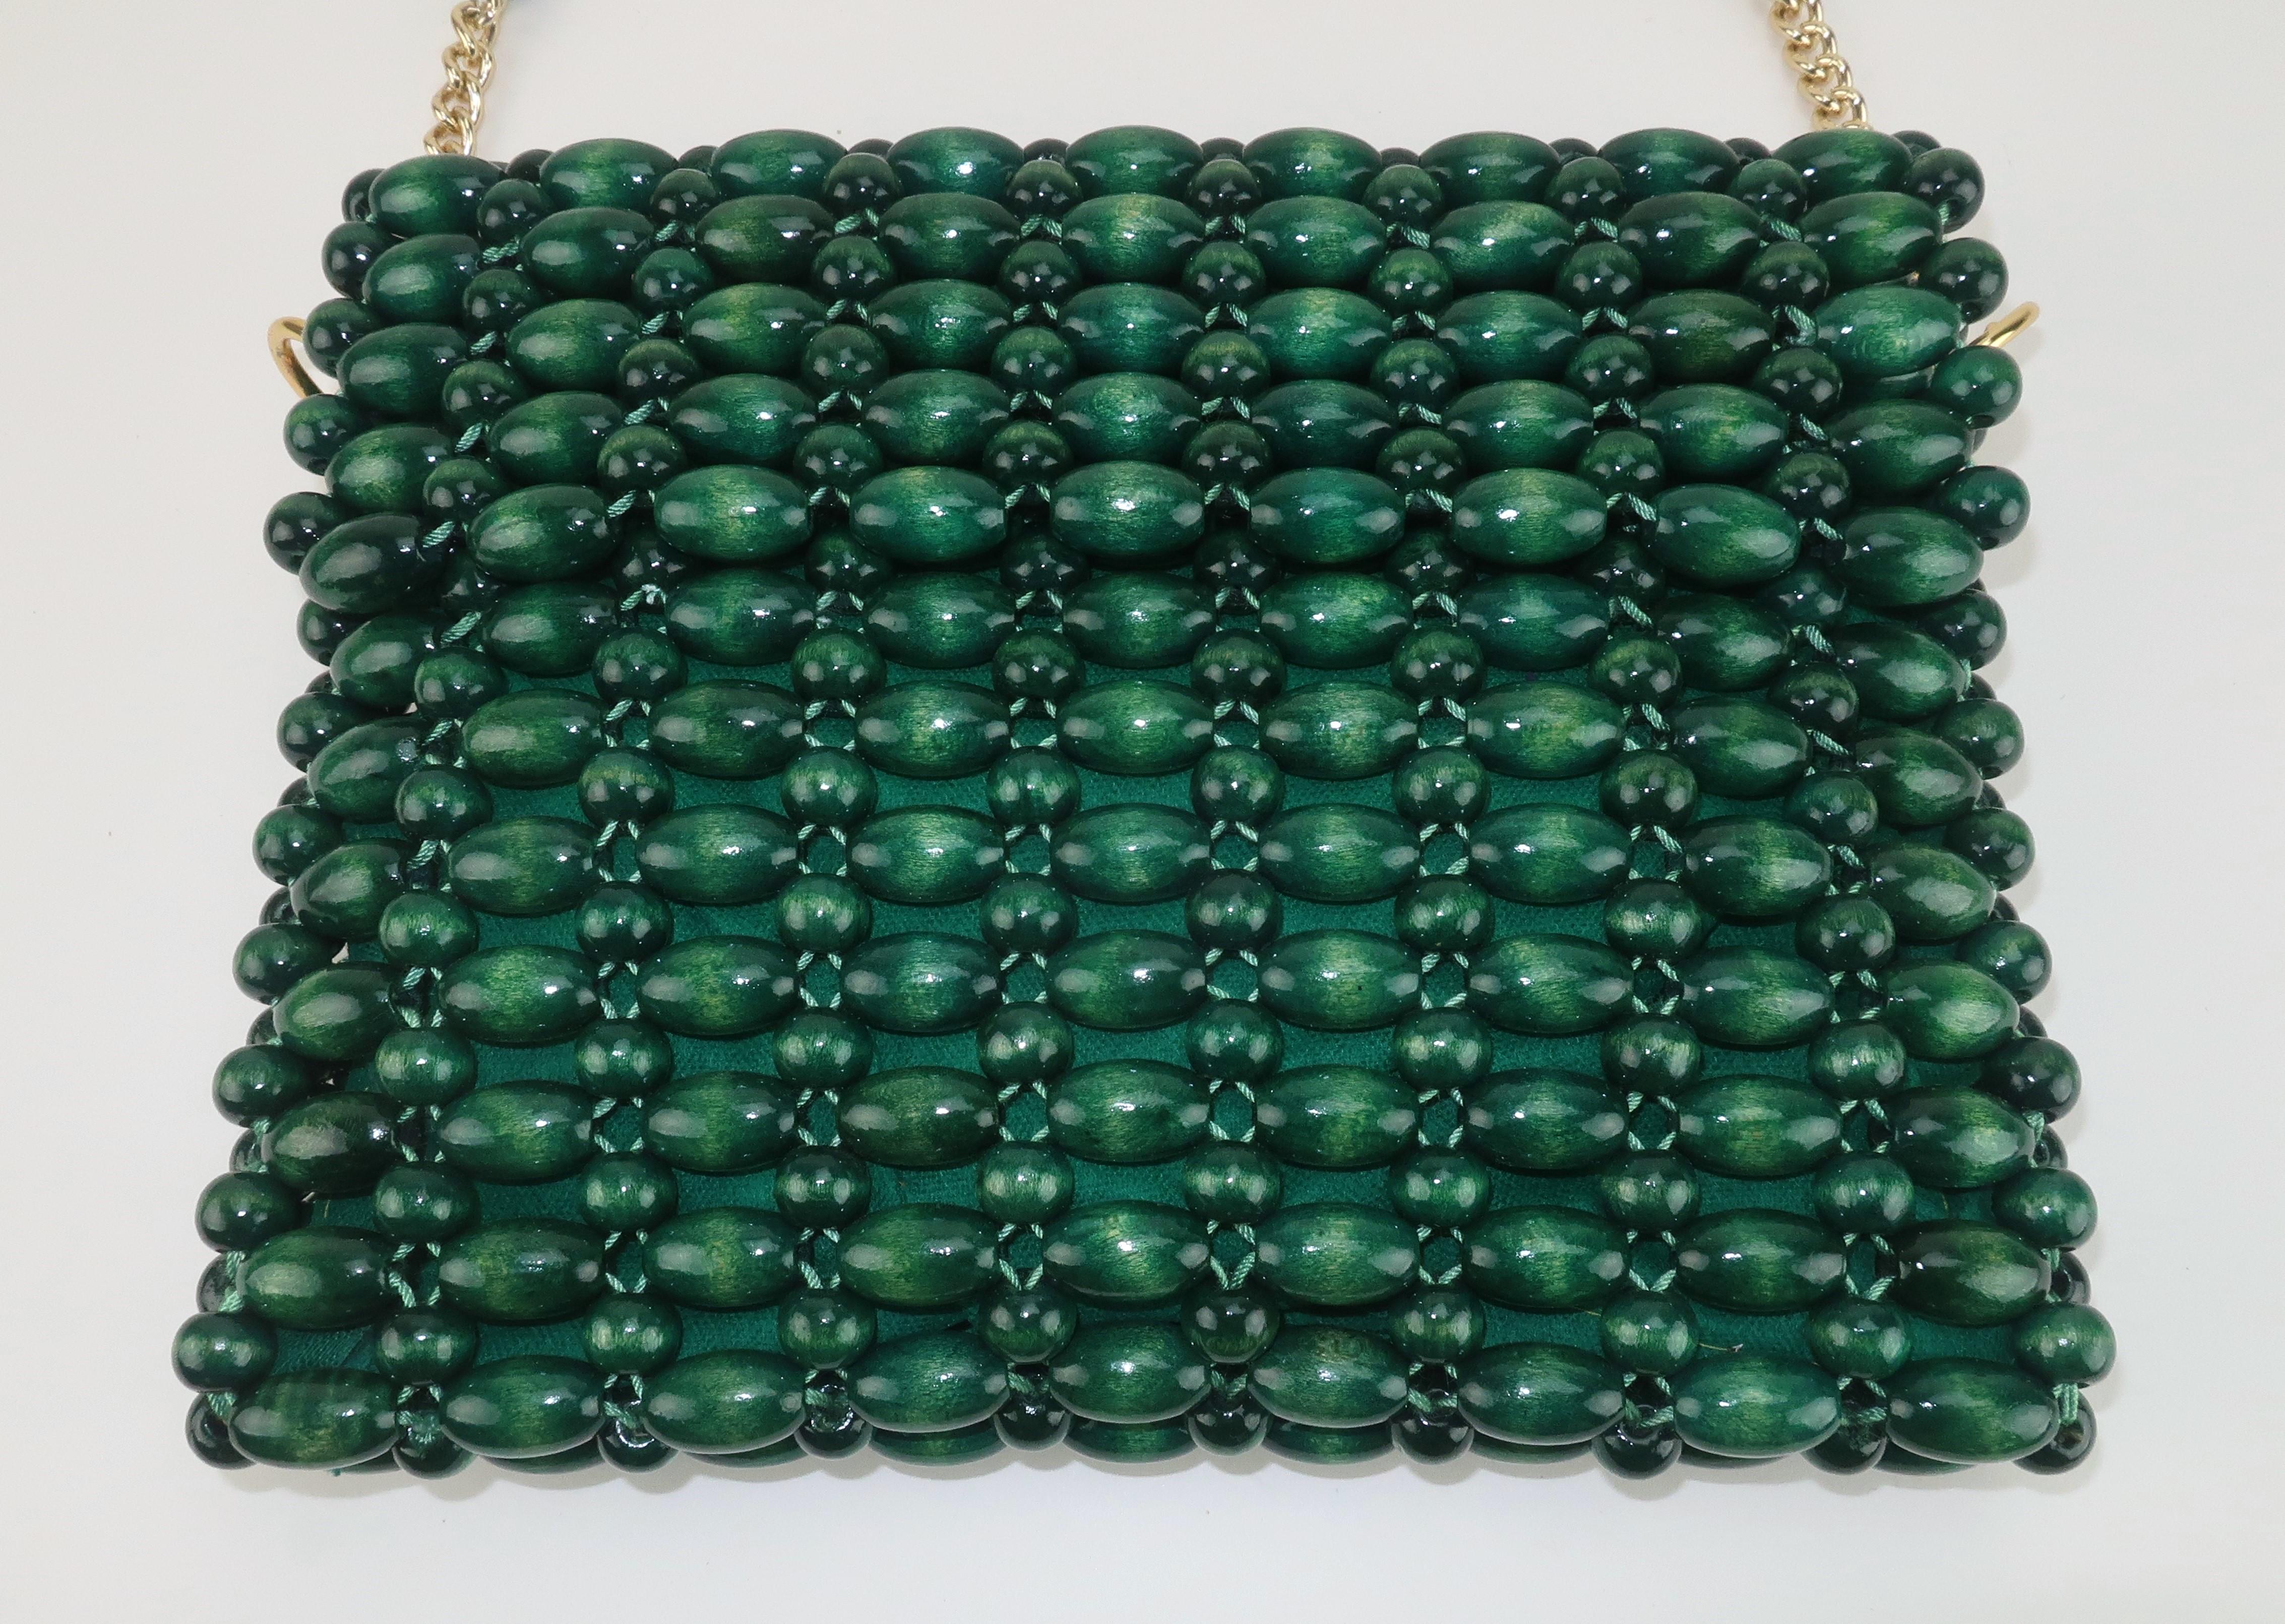 Modische Handtasche aus Holzperlen aus den 1960er Jahren in einem satten Smaragdgrün.  Der schulterlange Griff hat goldene Kettenakzente für einen Hauch von Glamour in diesem ansonsten bohèmehaften Look.  Die Frontklappe lässt sich zurückklappen und